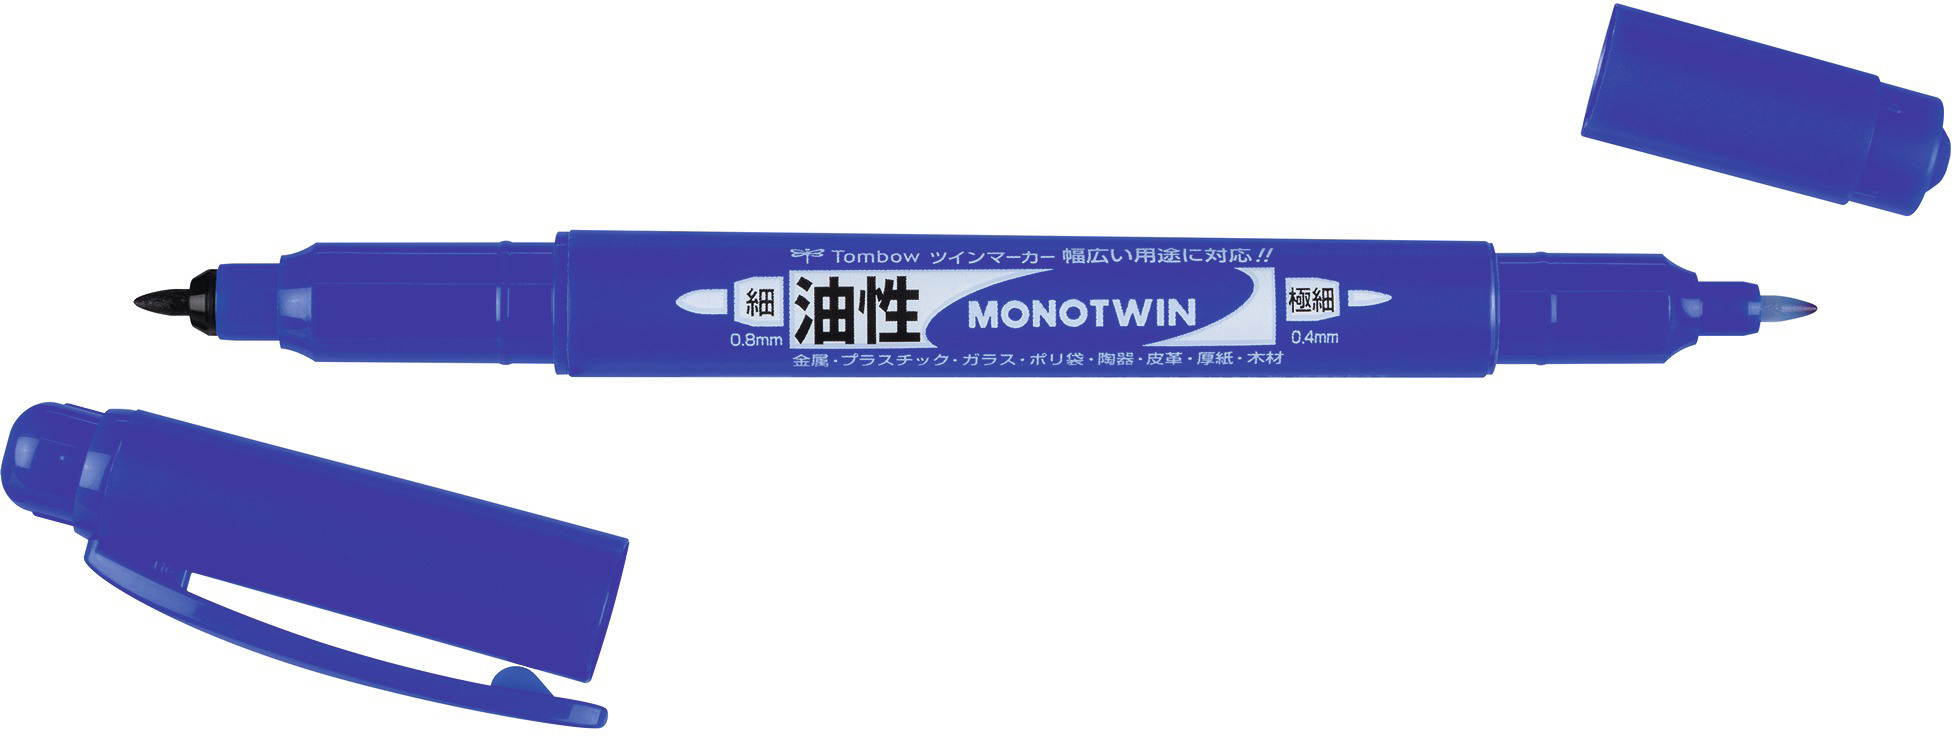 TOMBOW Mono twin permanent marker OS-TME15 bleu